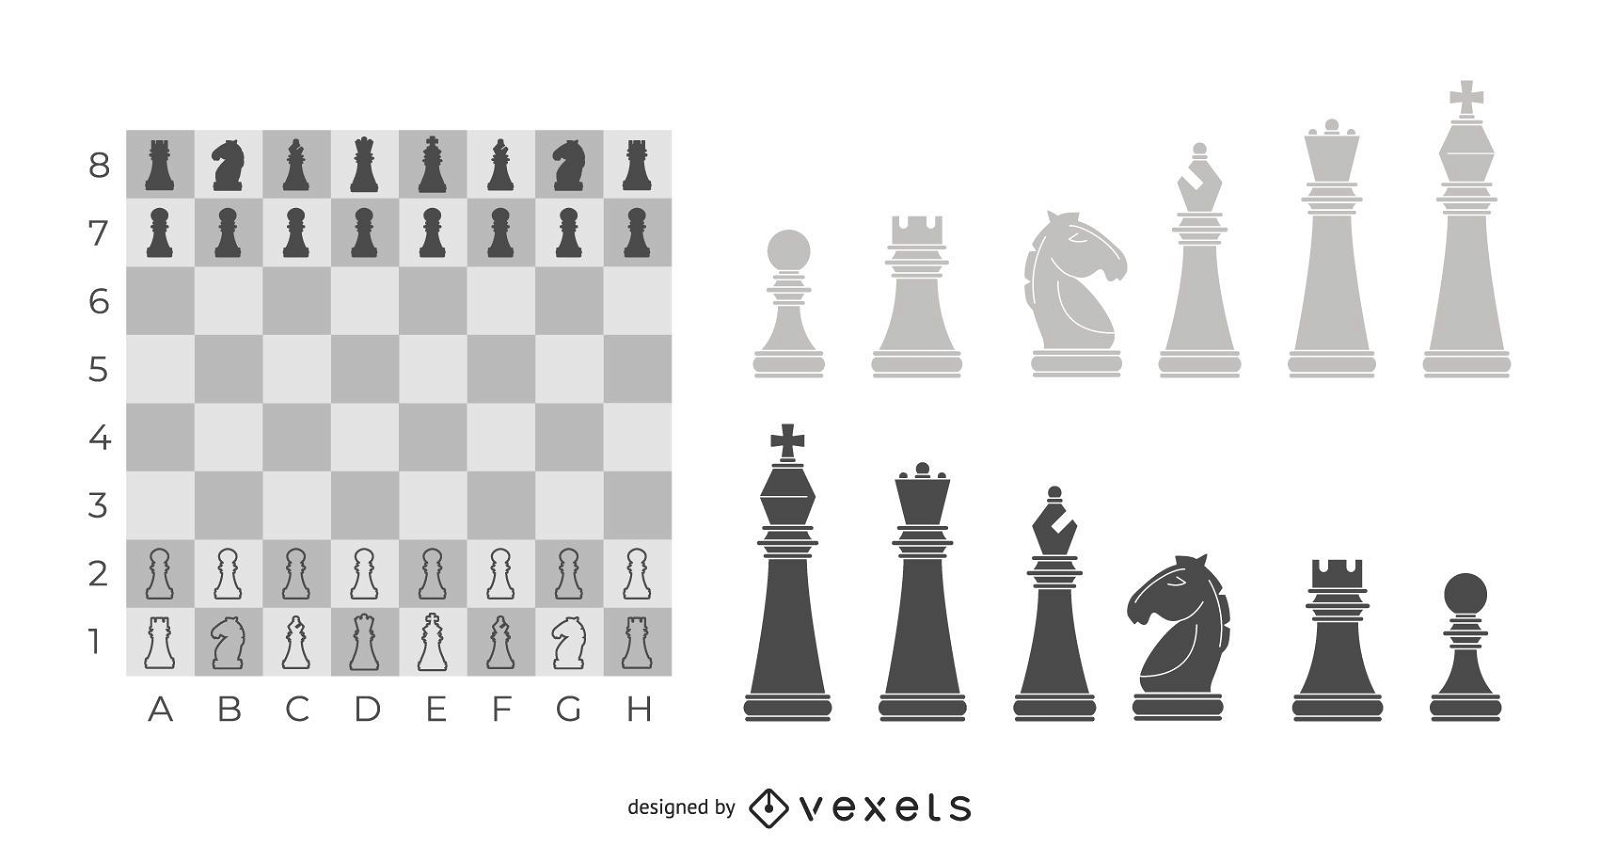 Ilustração de tabuleiro de xadrez de vidro com peças de xadrez